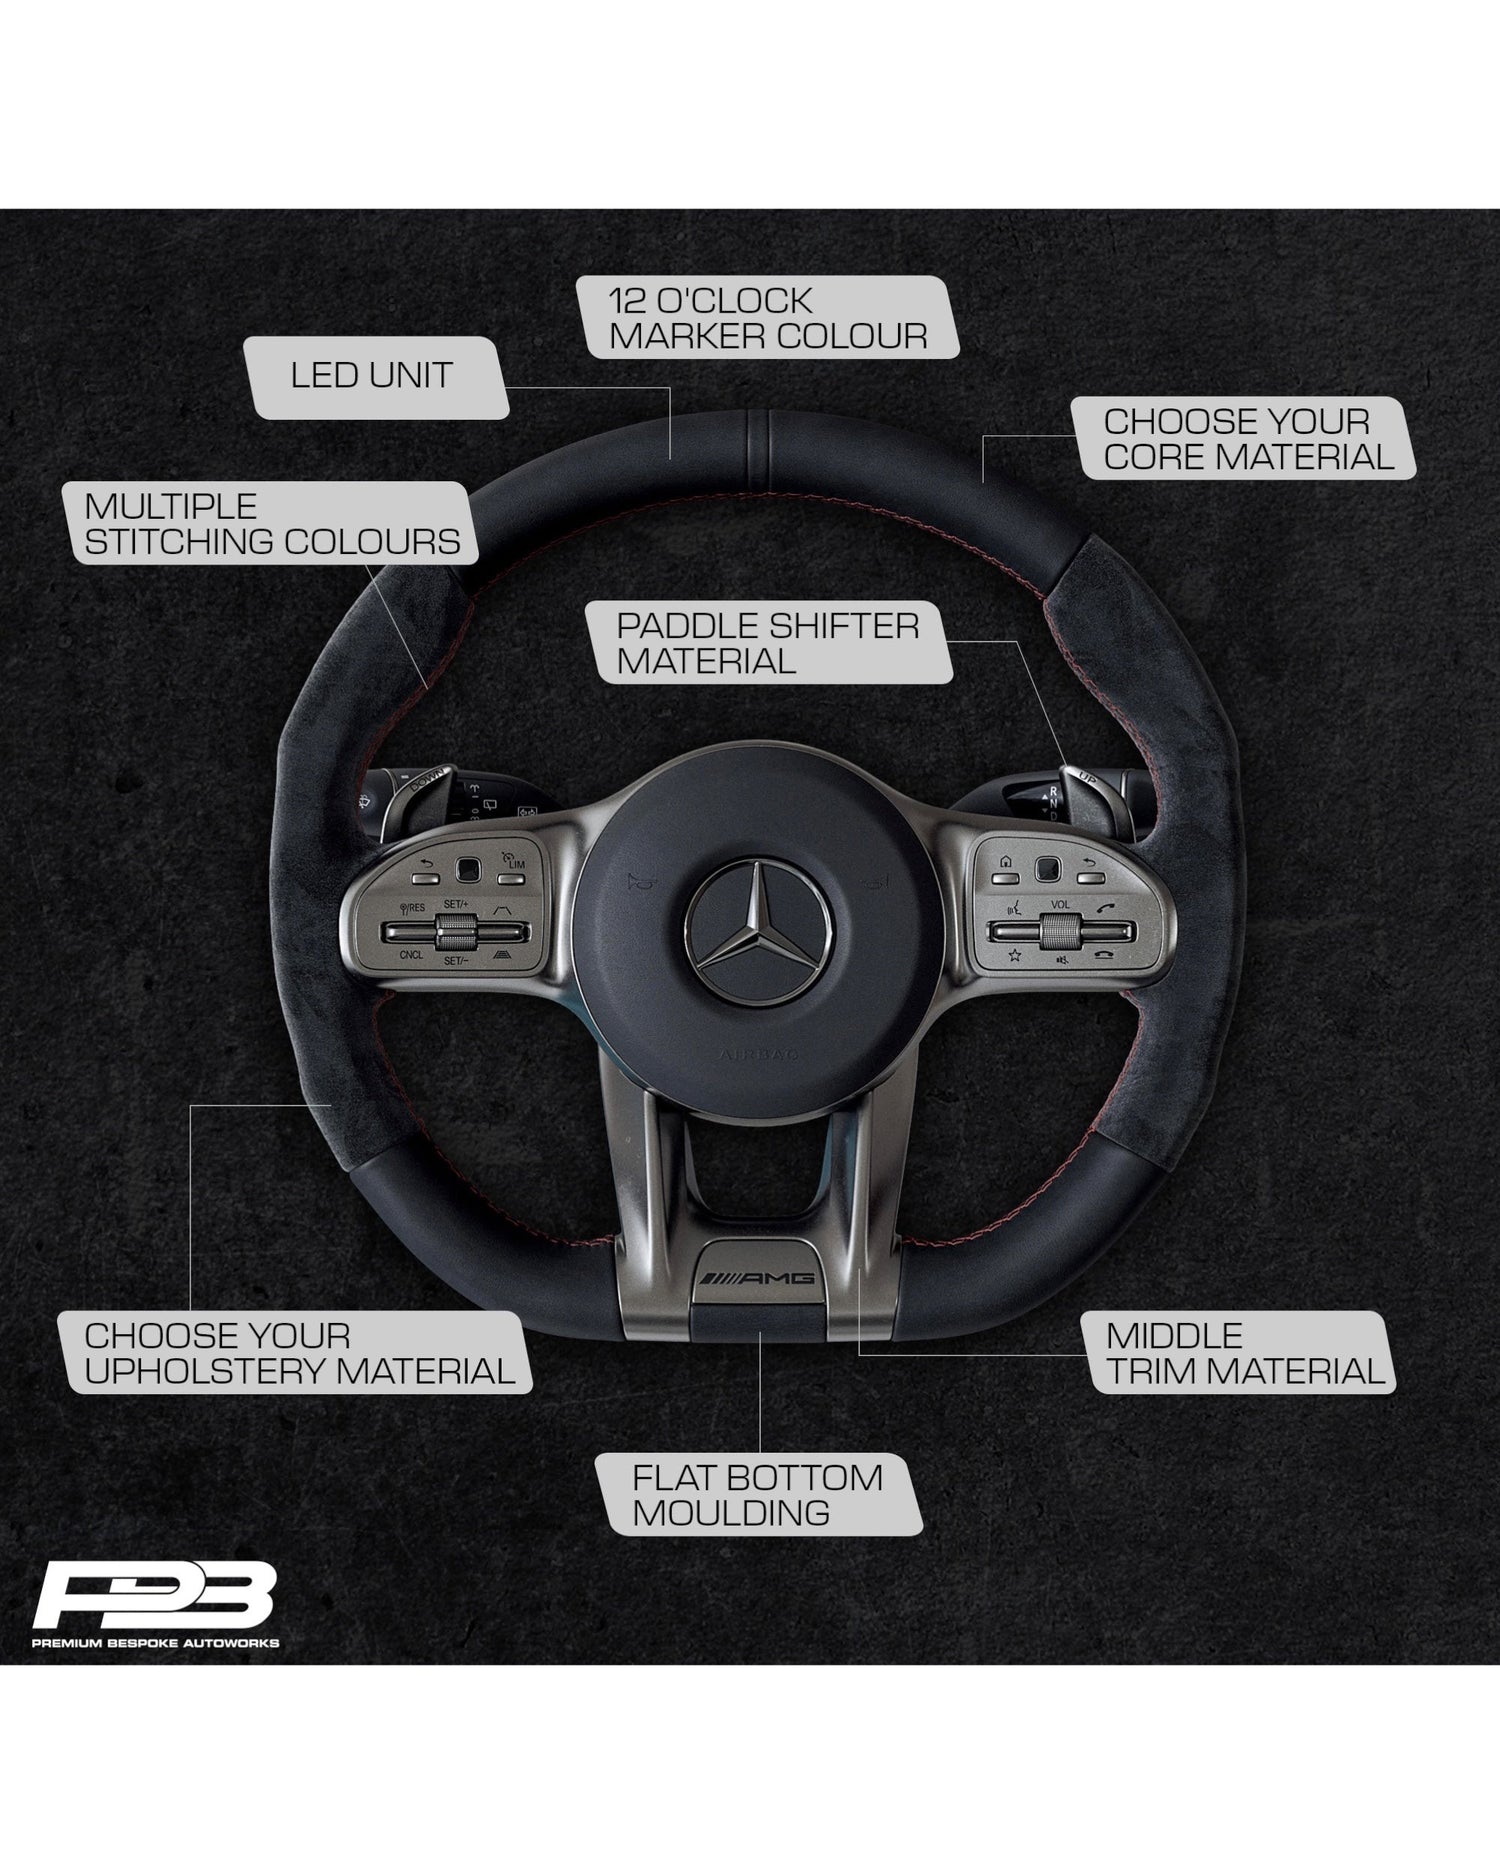 About Custom Steering Wheels